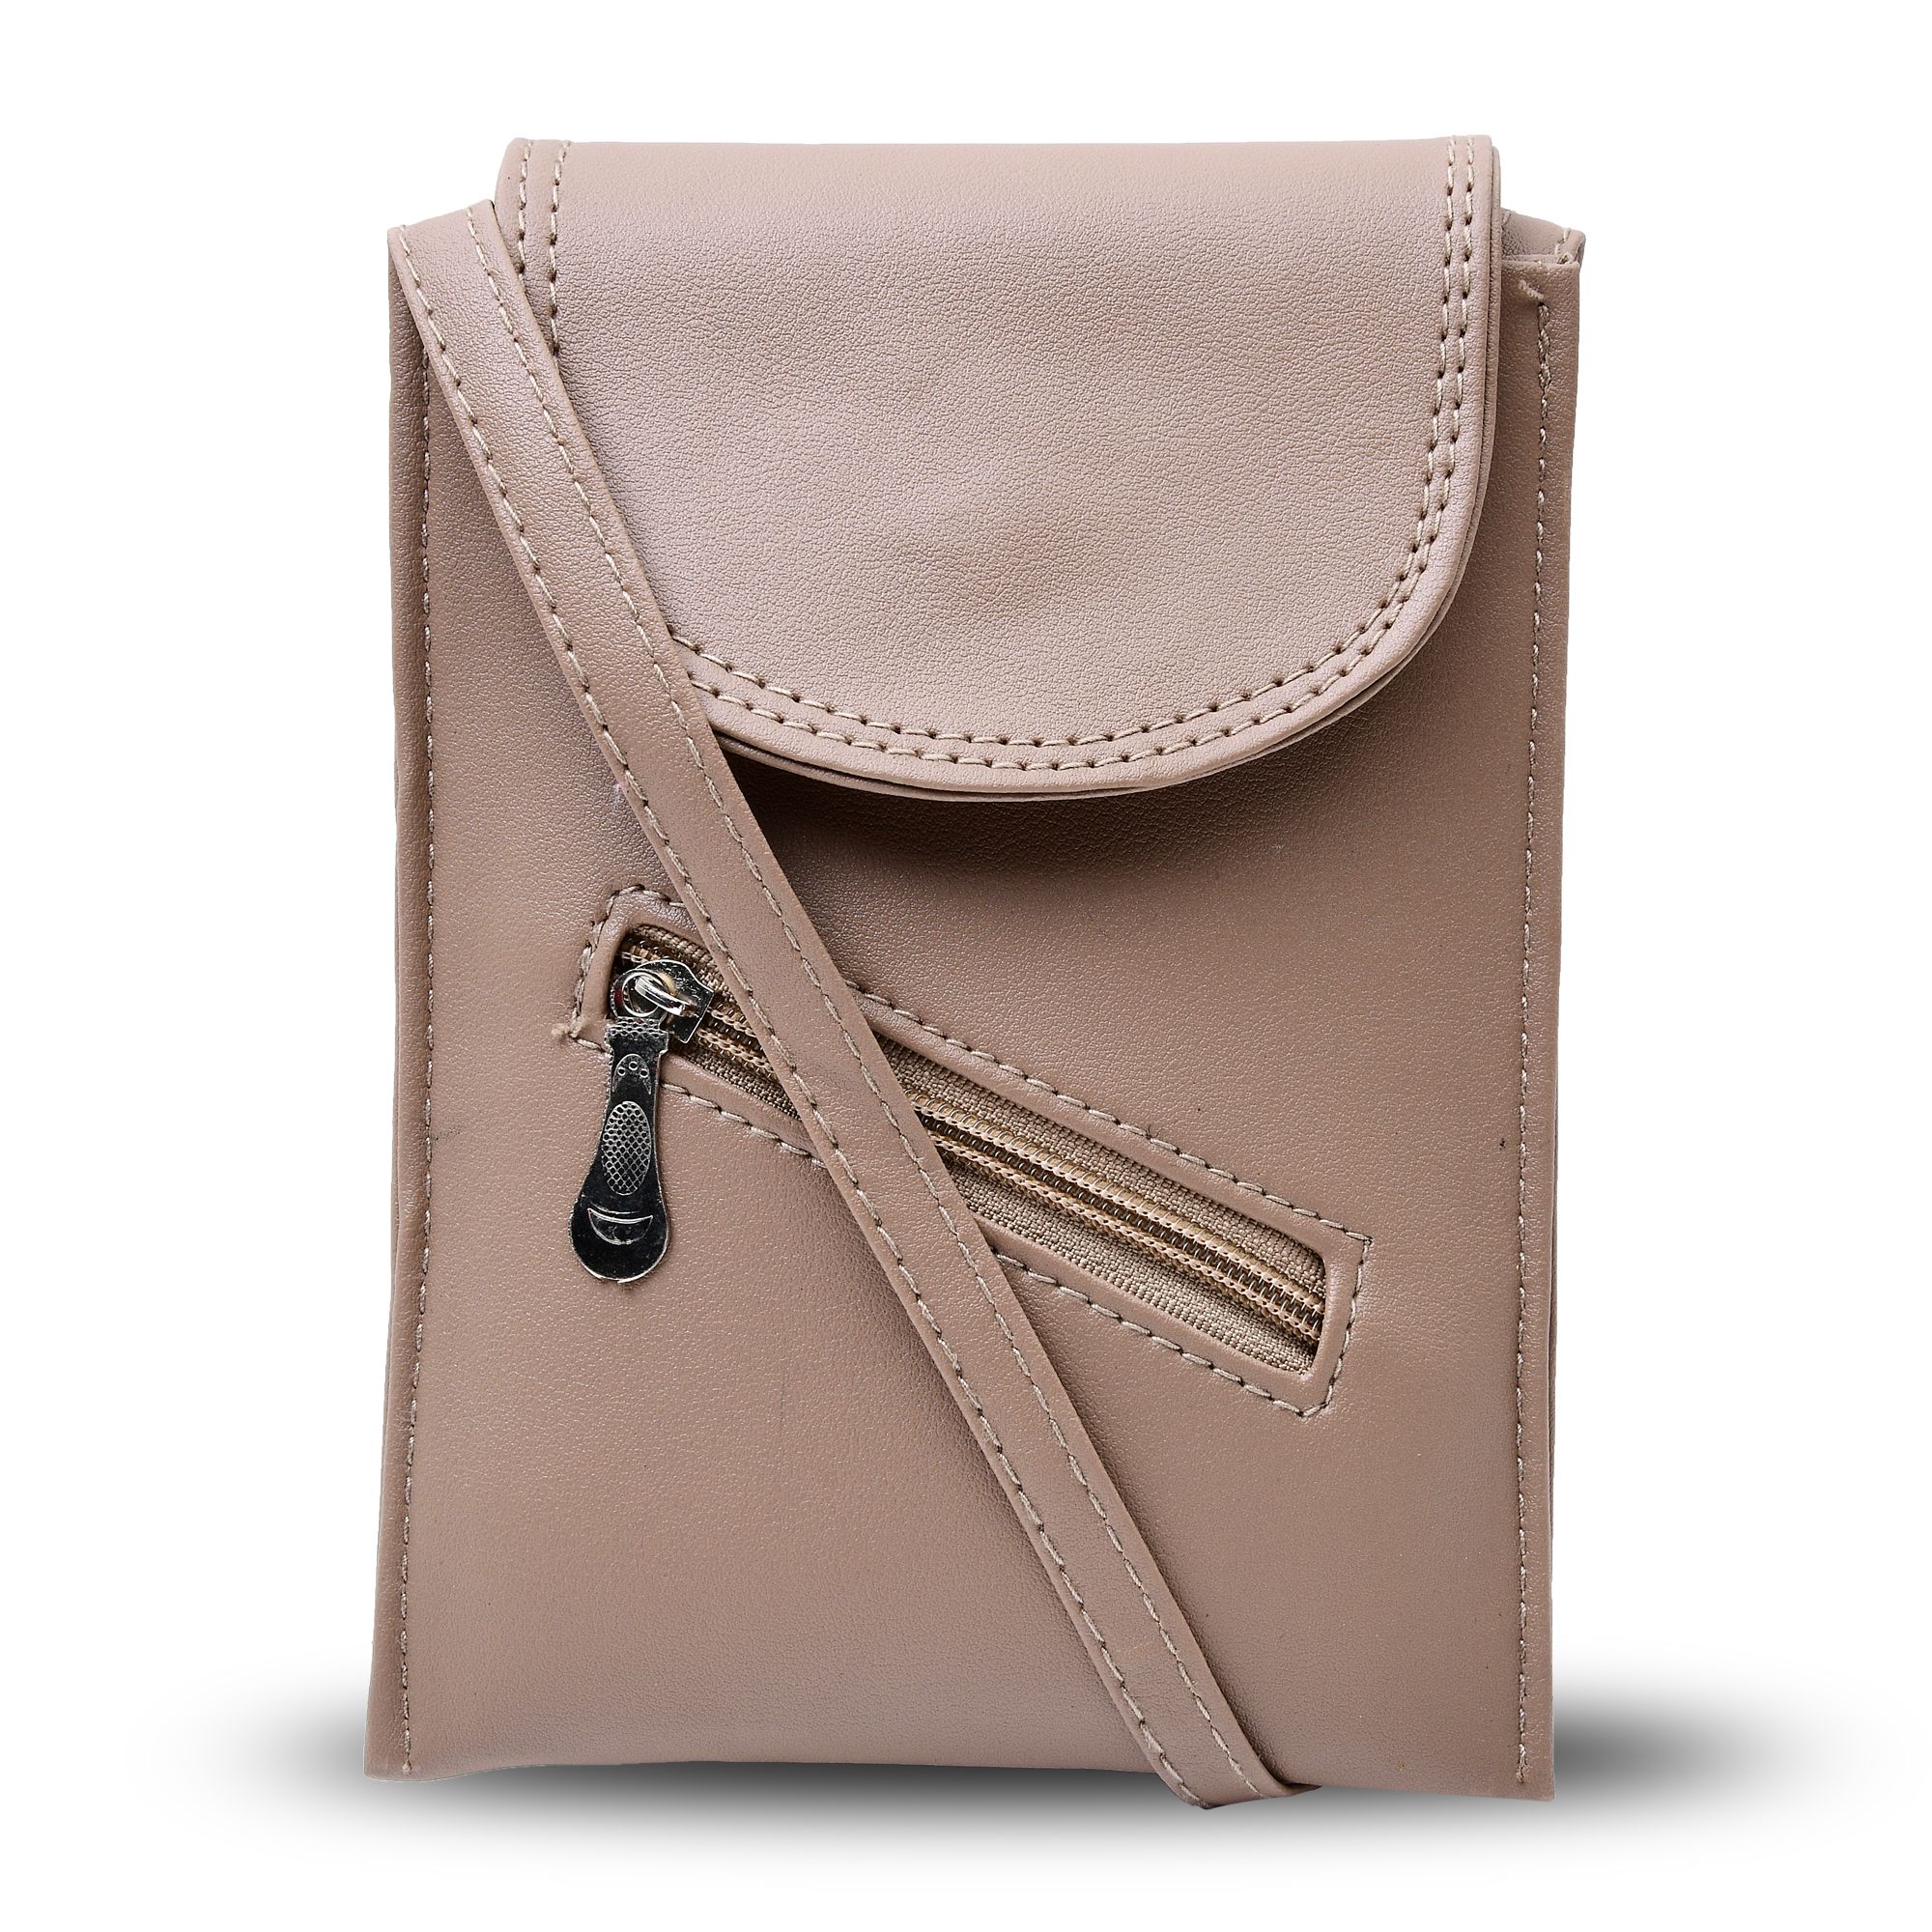 Buy LA GLARE Women Sling Bag | In-Trend Latest Cross Body bag at Amazon.in